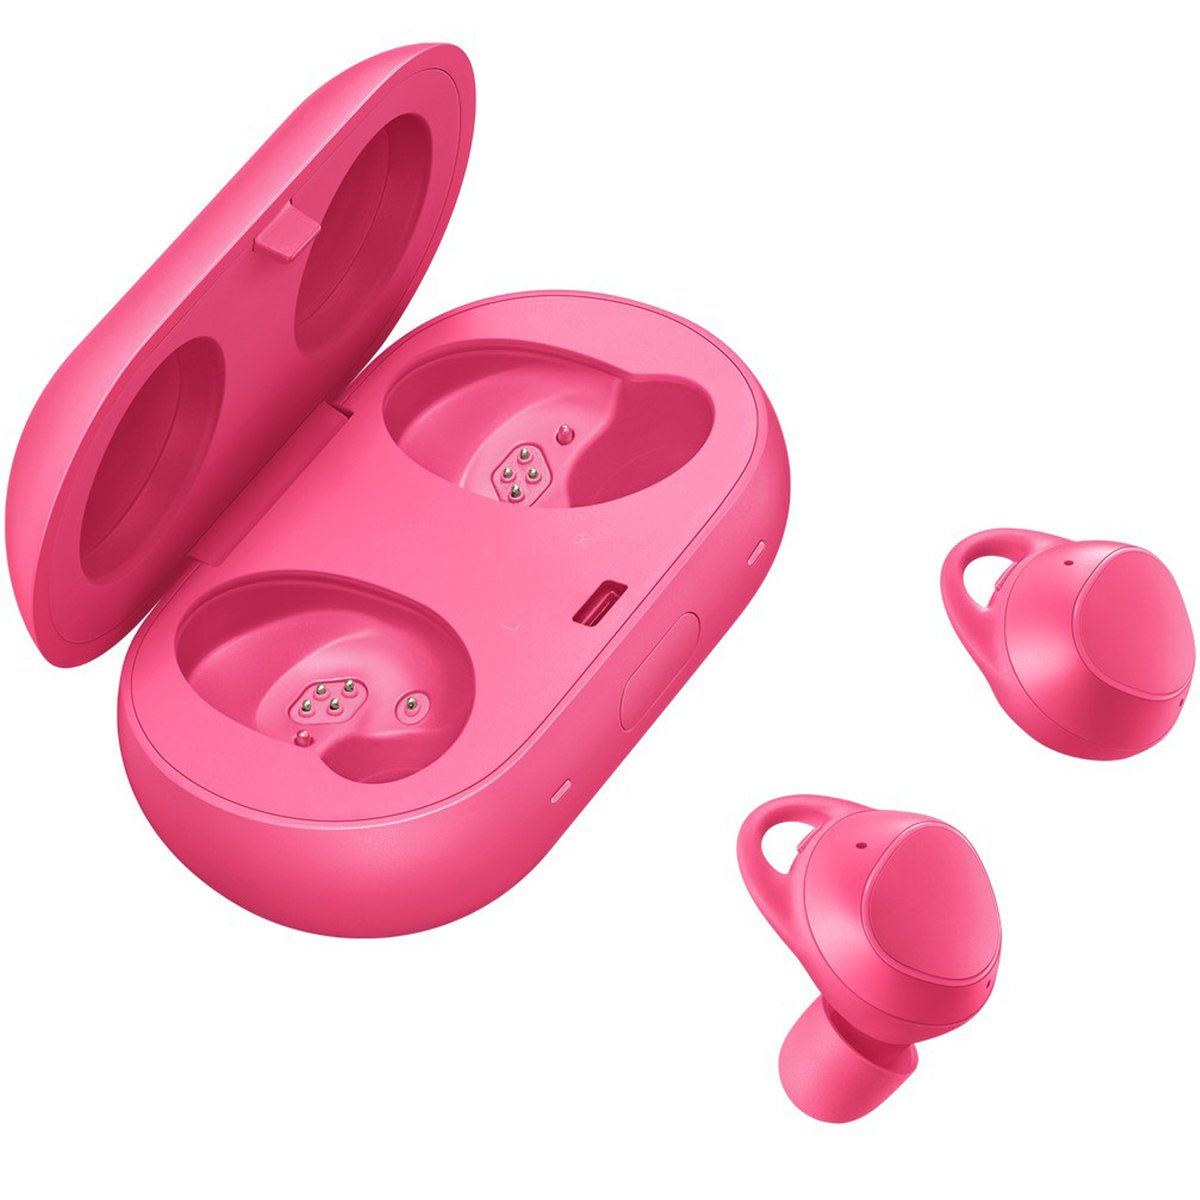 Samsung Gear IconX Earbuds R140 Pink